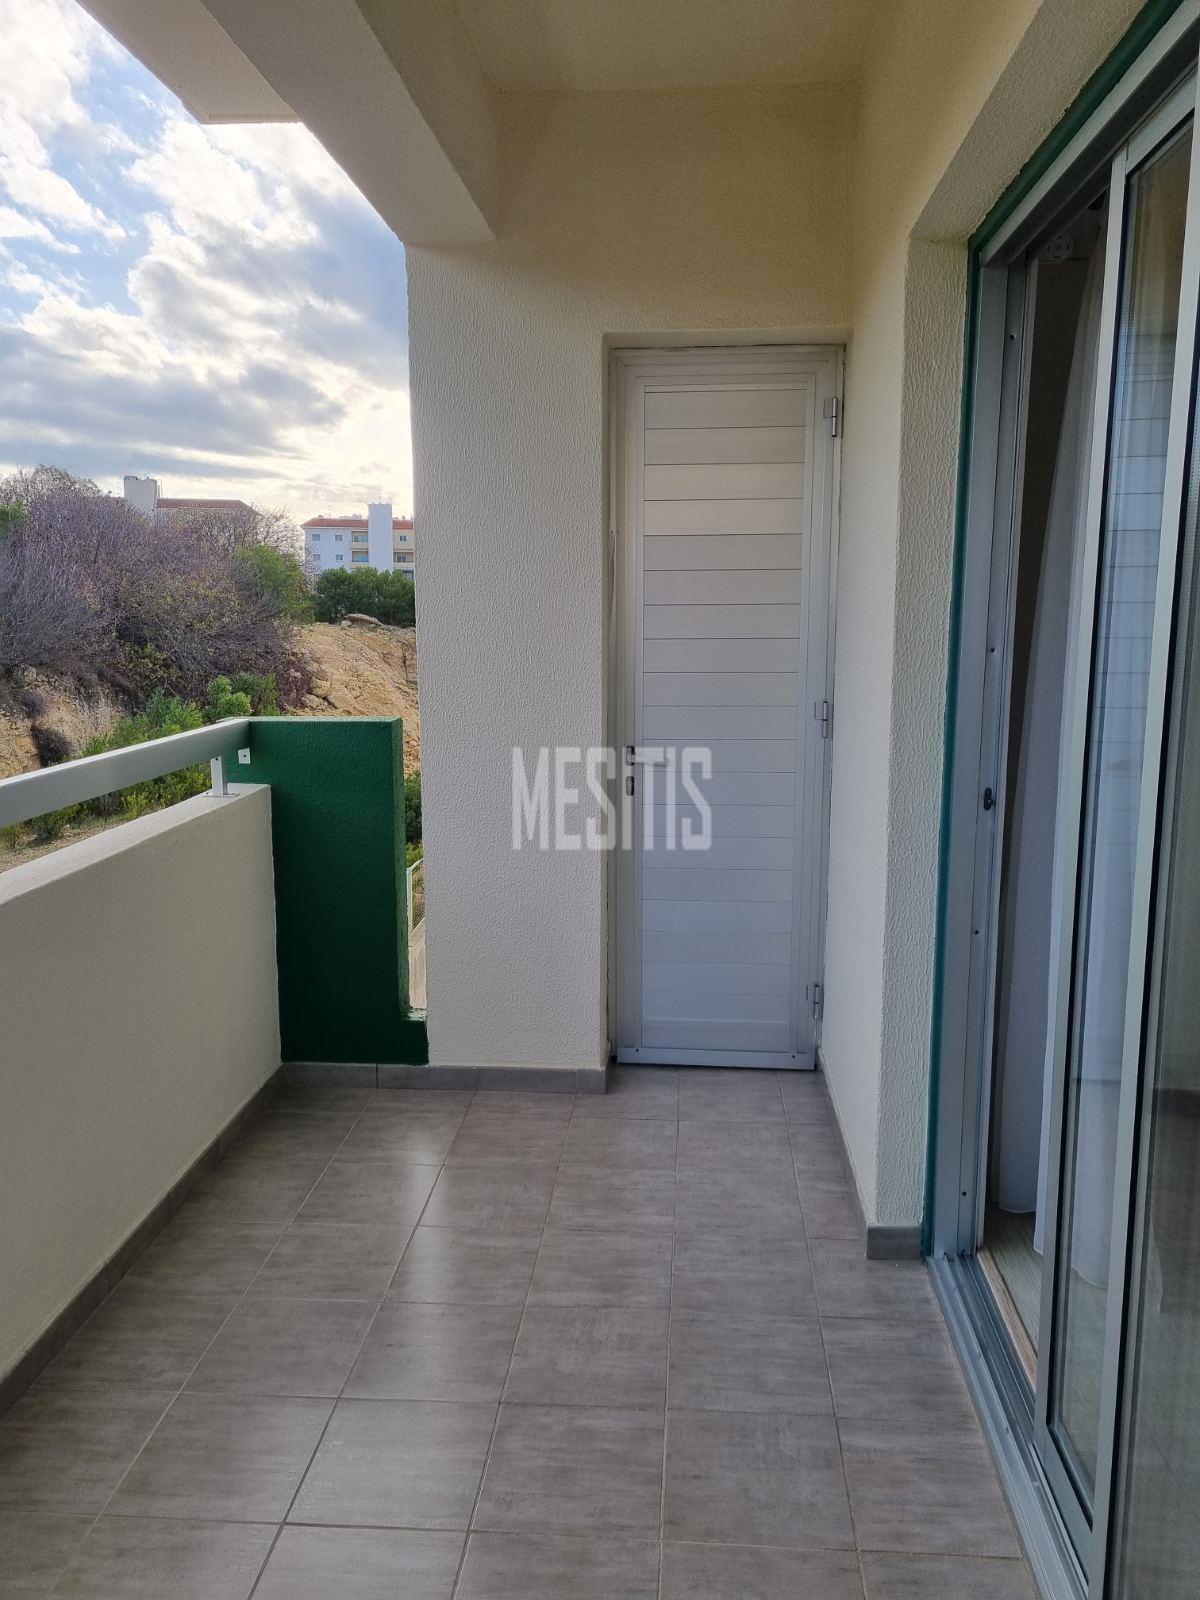 3 Βedroom Τop Floor Apartment For Sale In A Prime Location With Large Spaces And Incredible Aesthetics Αnd Views To All Of Nicosia #30861-23